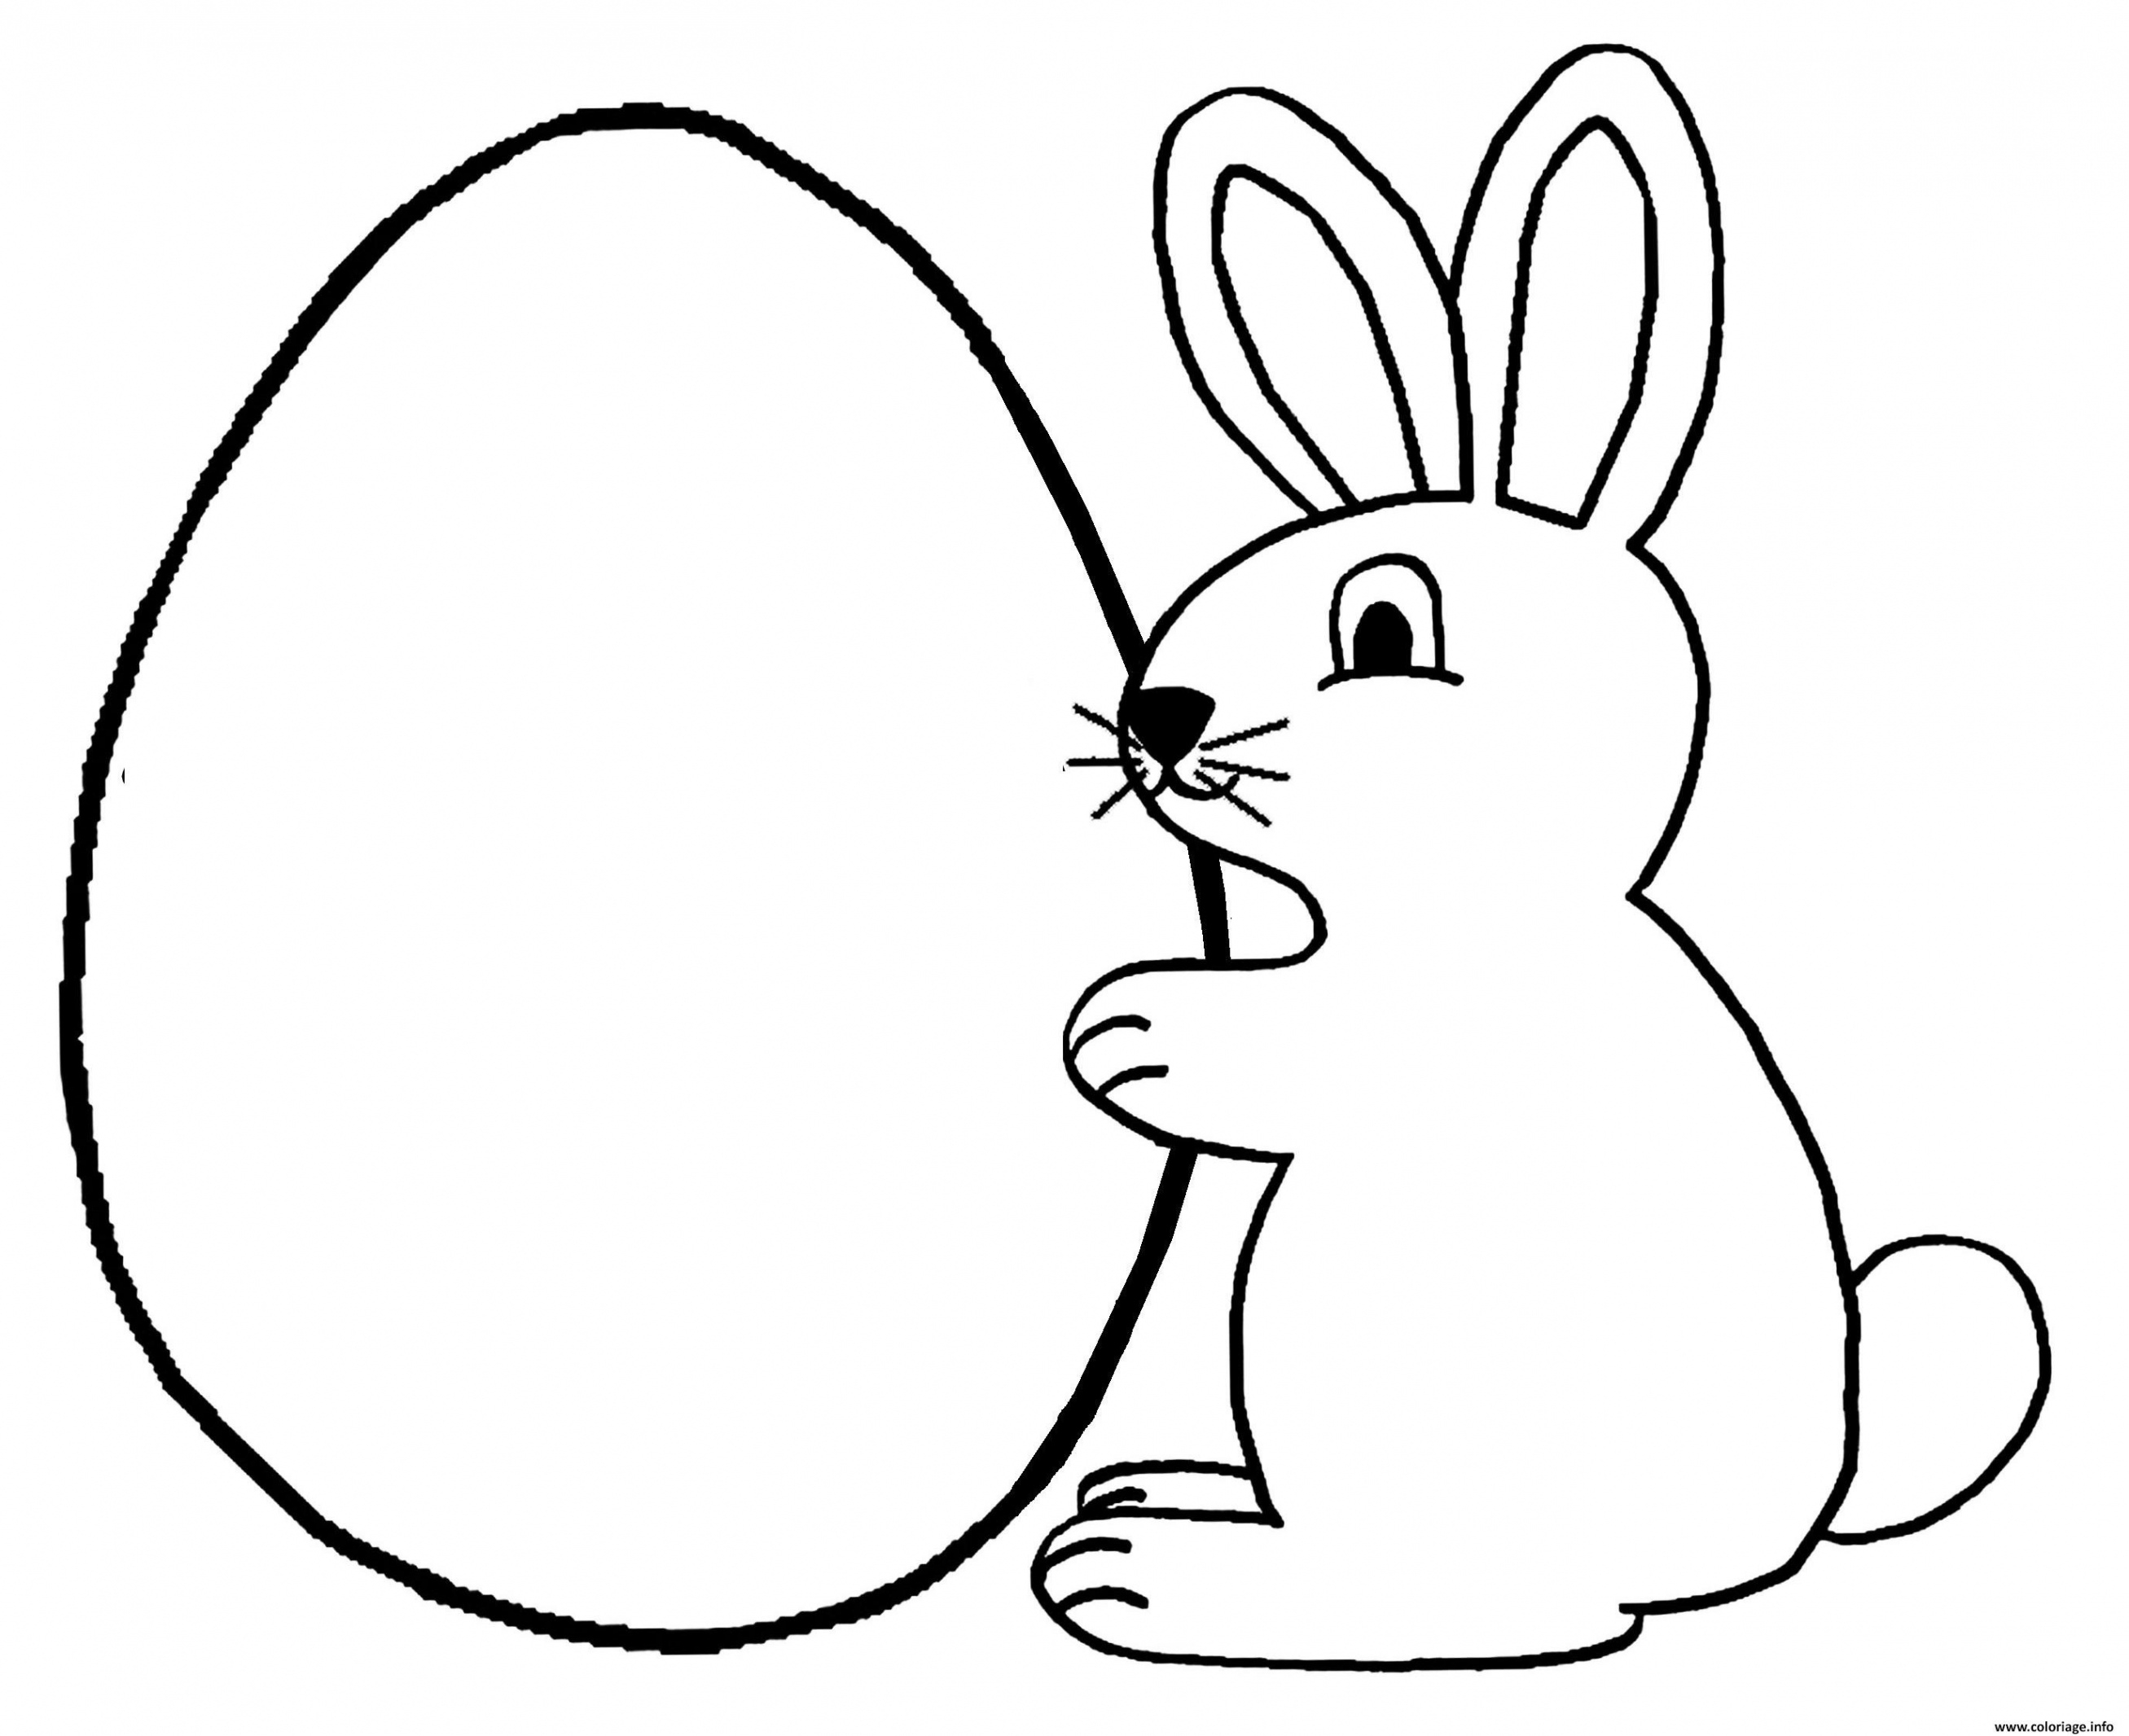 Comment dessiner un lapin de paque